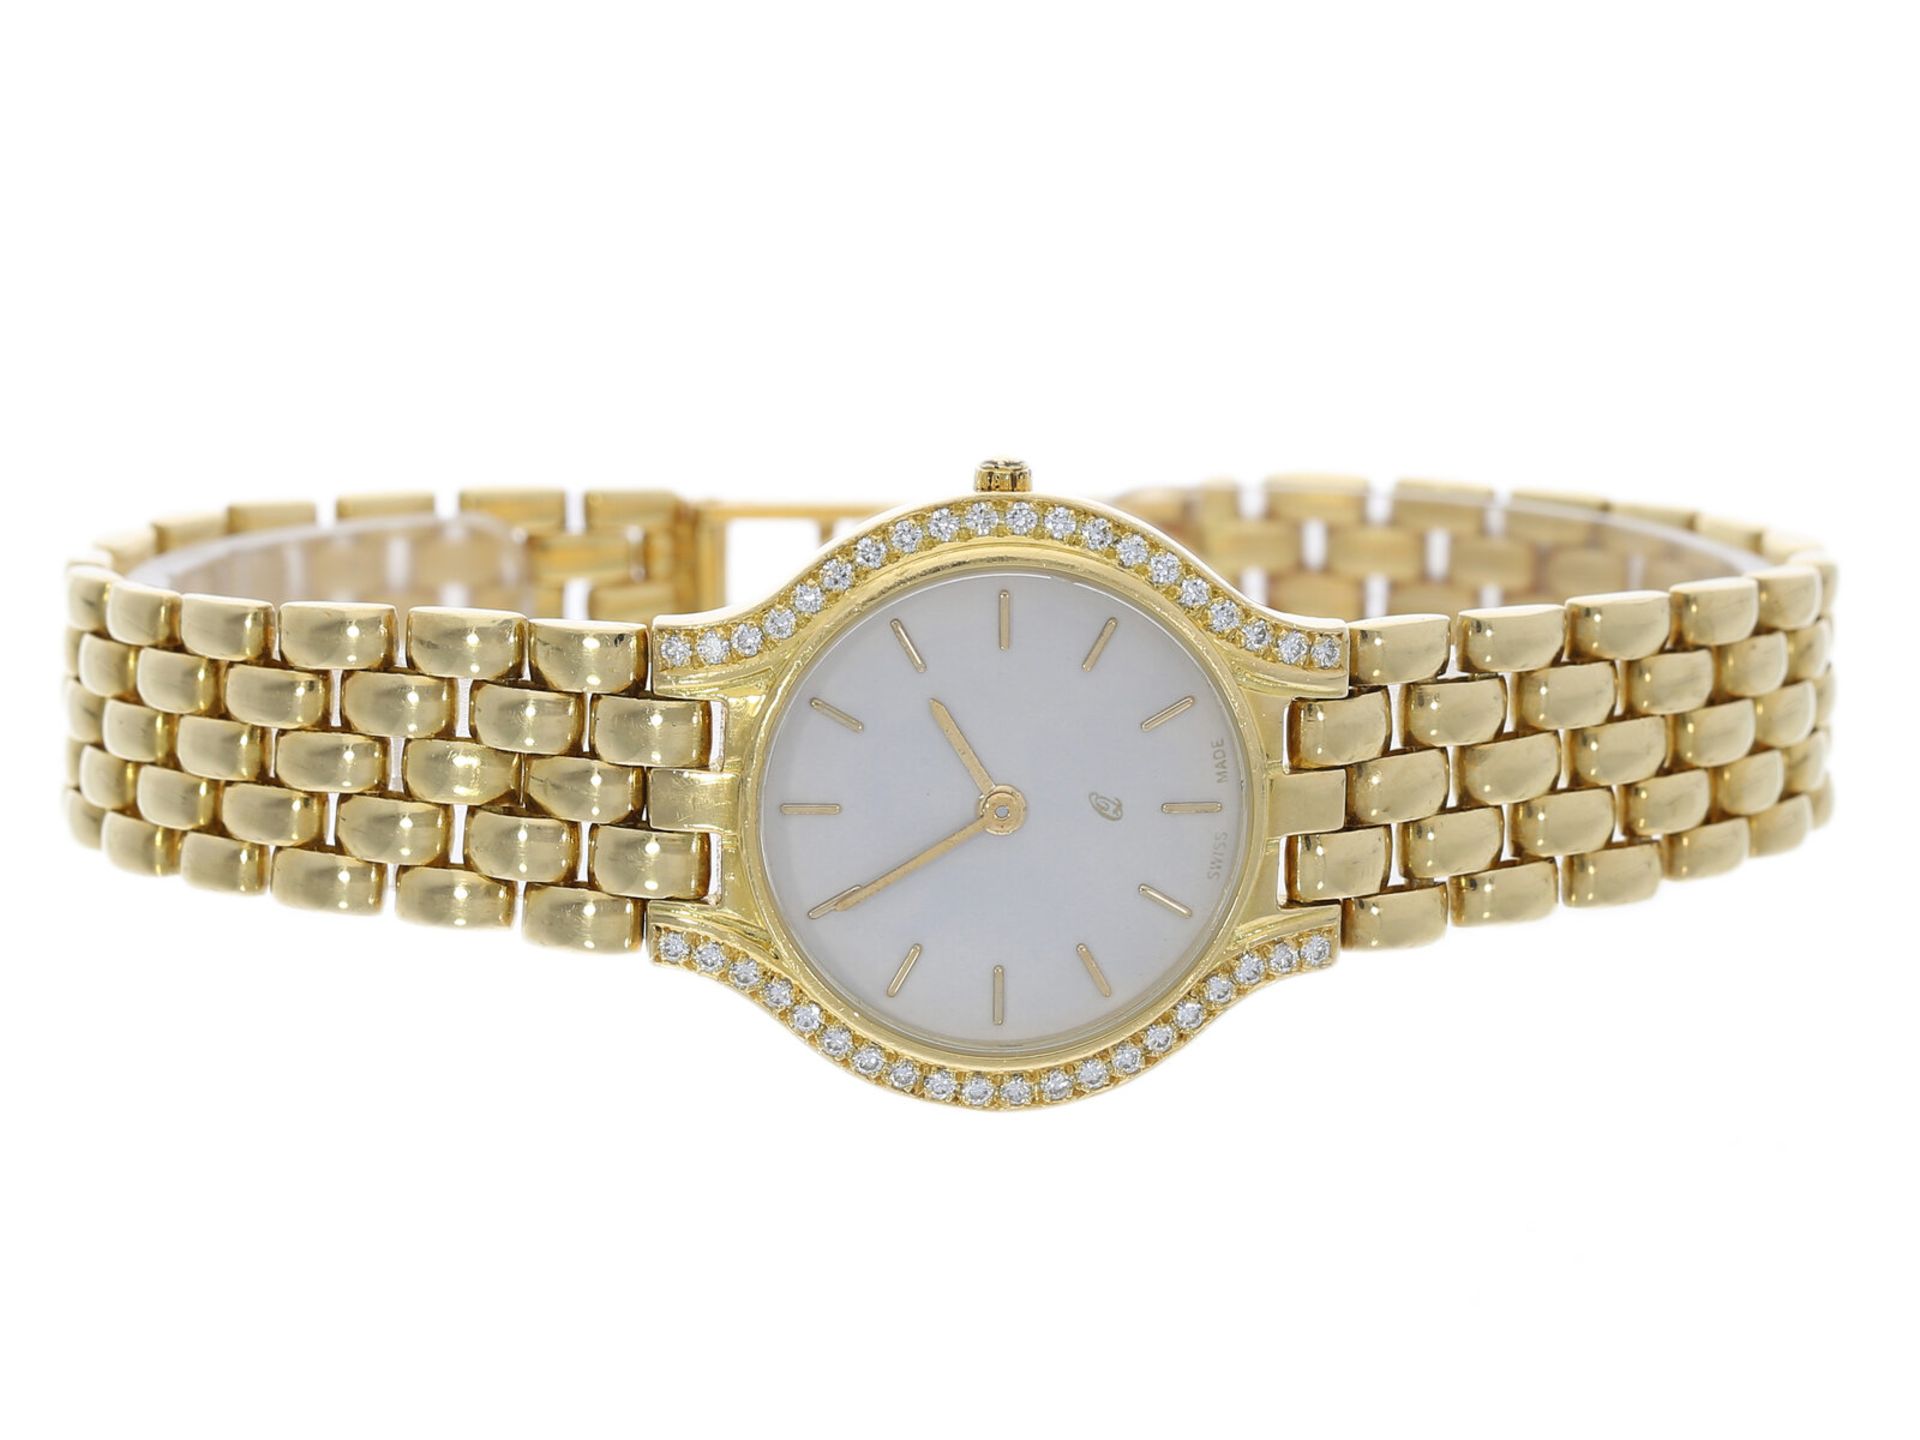 Armbanduhr: Goldene vintage Damenuhr mit Brillantbesatz, 18K Gelbgold